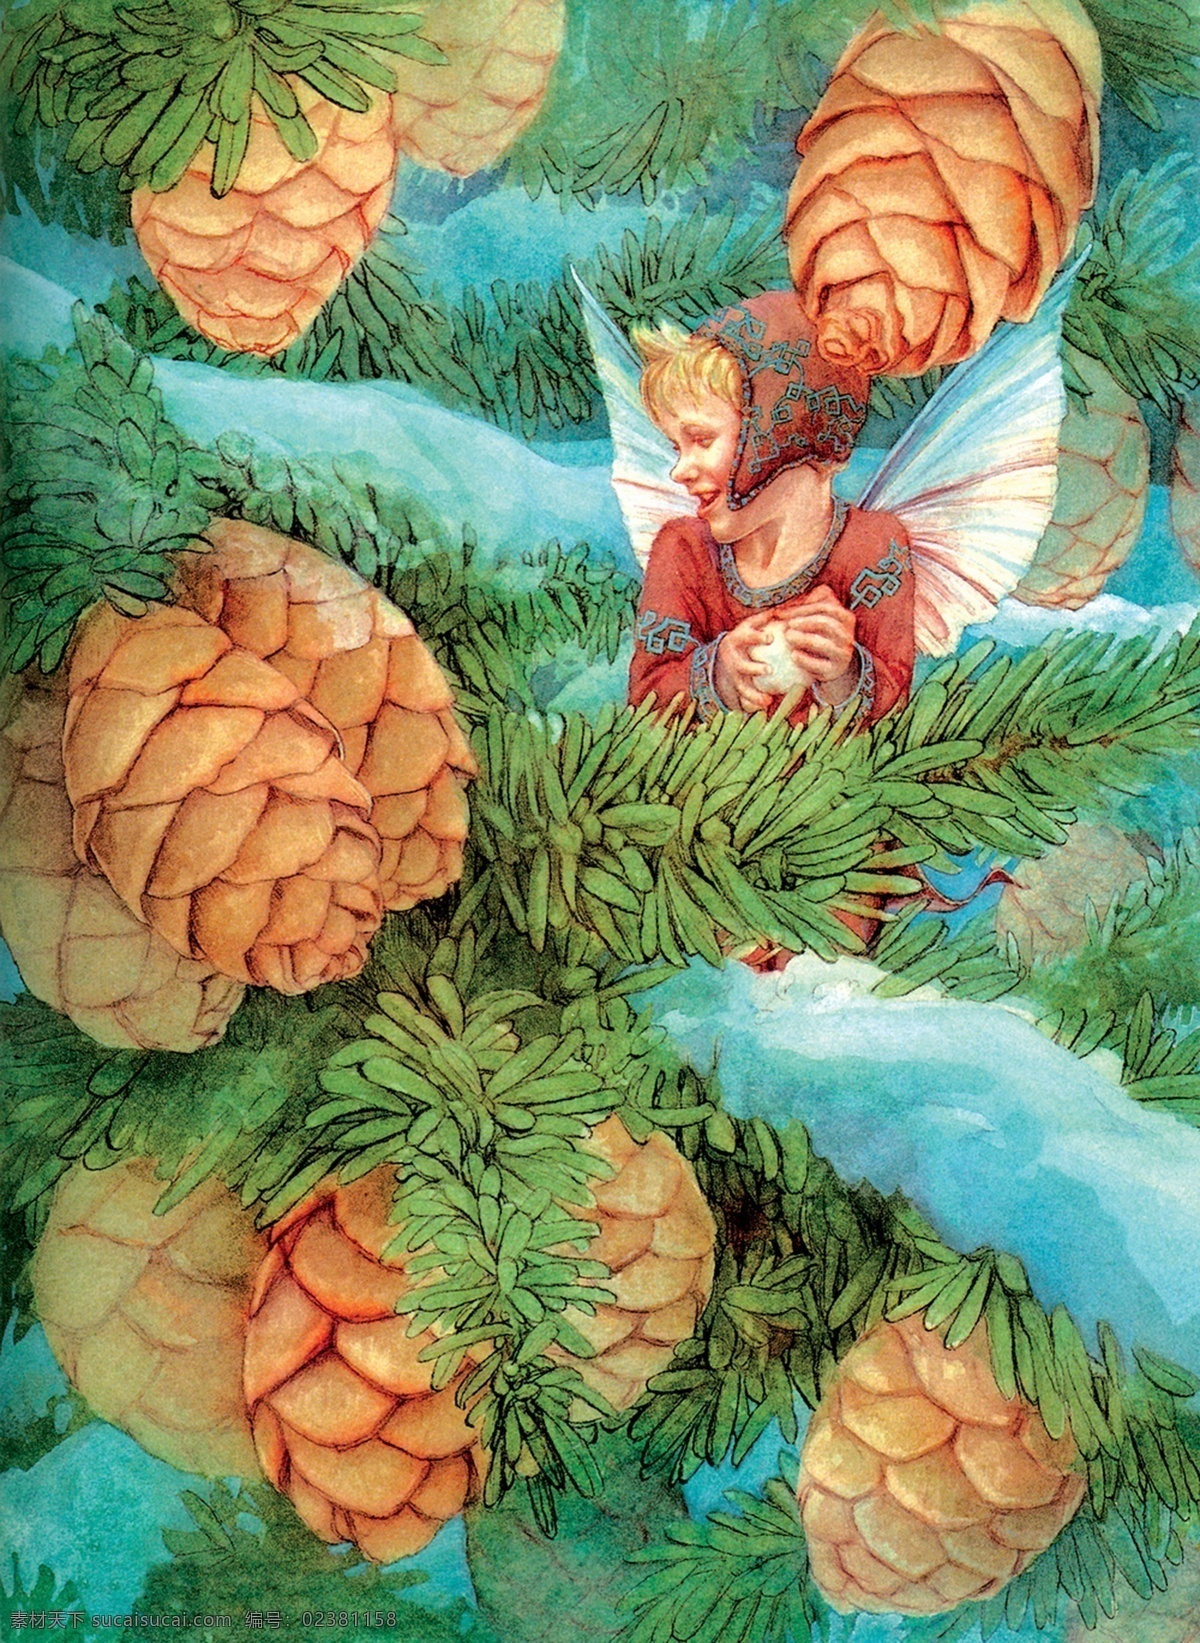 插画 插图 翅膀 动漫 绘画书法 精灵 帽子 欧洲 可爱的天使 仙子 仙女 松籽 树 神话 童话 文化艺术 插画集